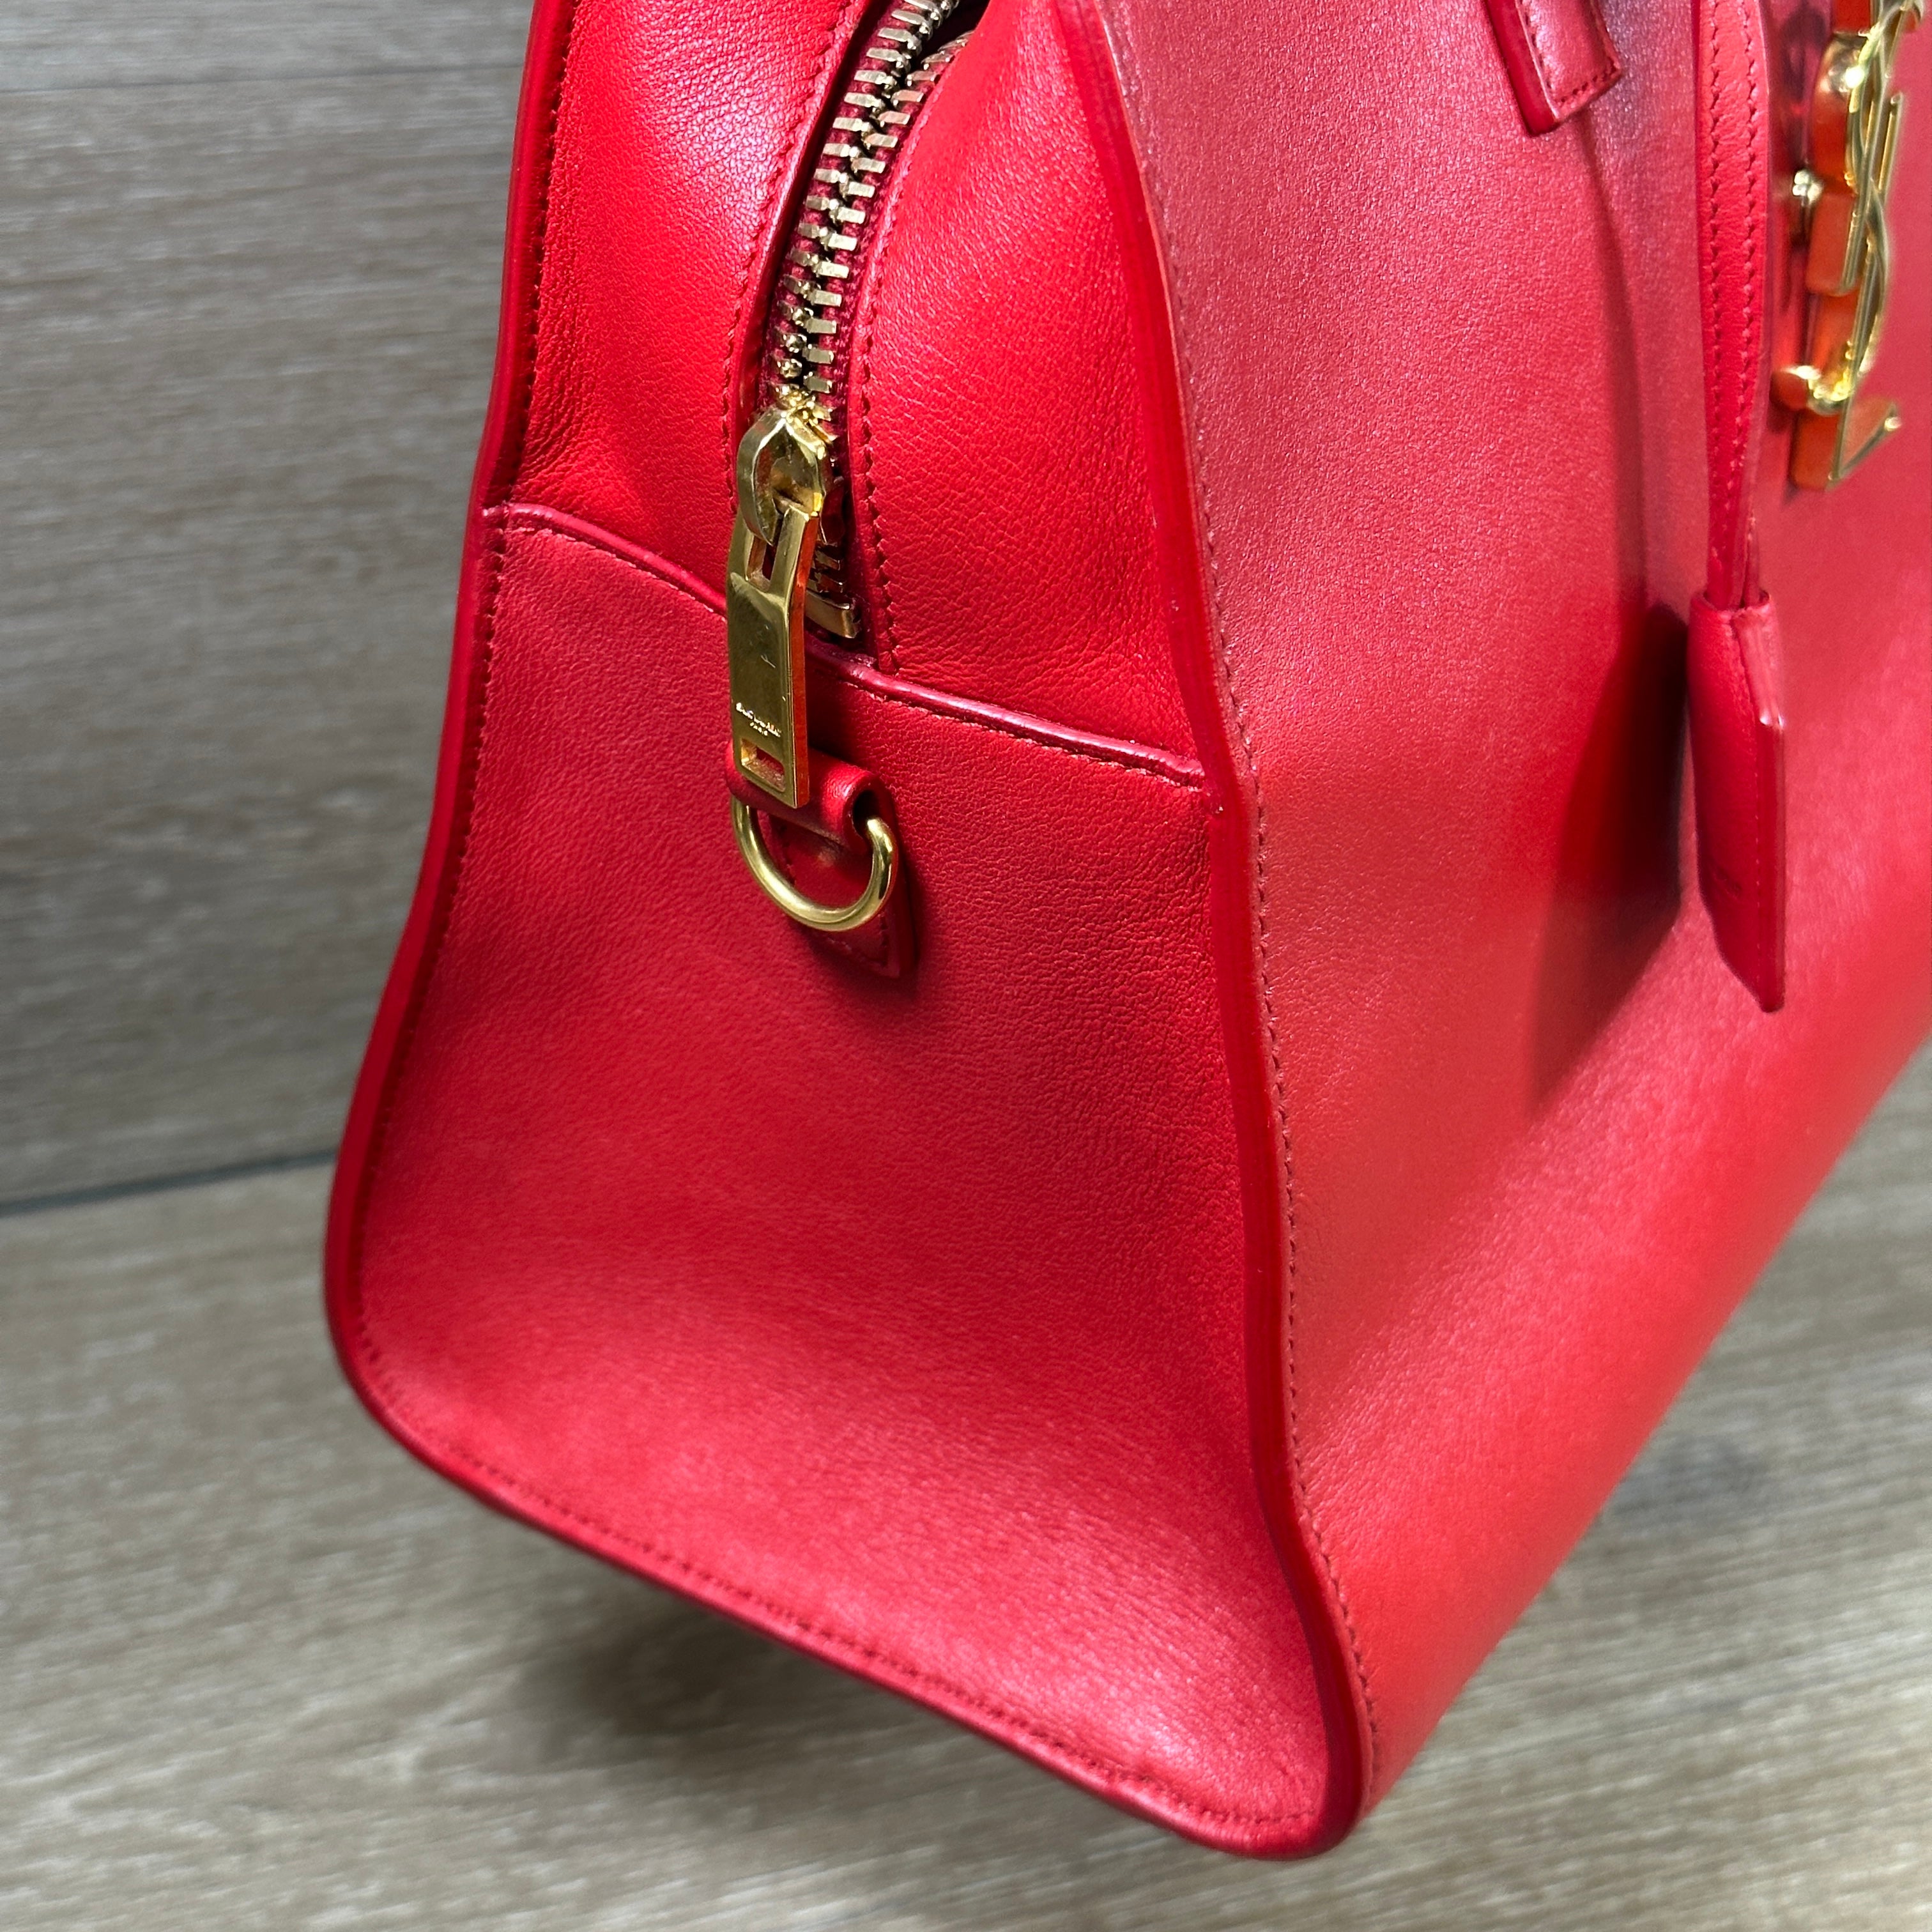 SAINT LAURENT Saint Laurent Leather Baby Cabas Handbag Red Ladies